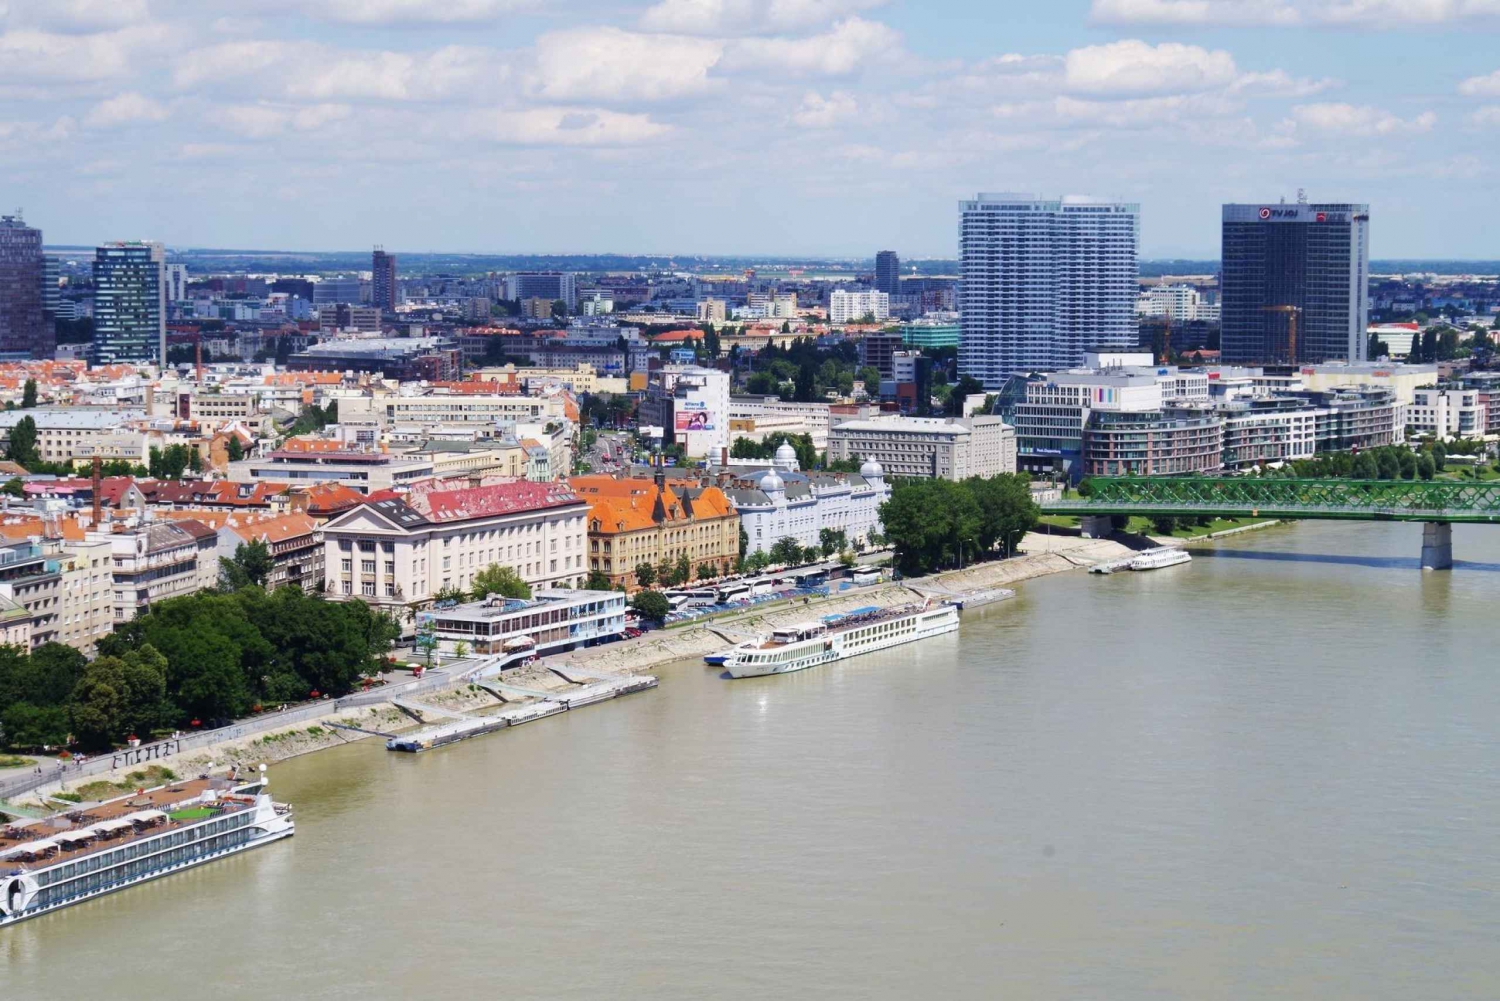 Wien: Bratislava Puolipäiväinen yksityinen kiertoajelu